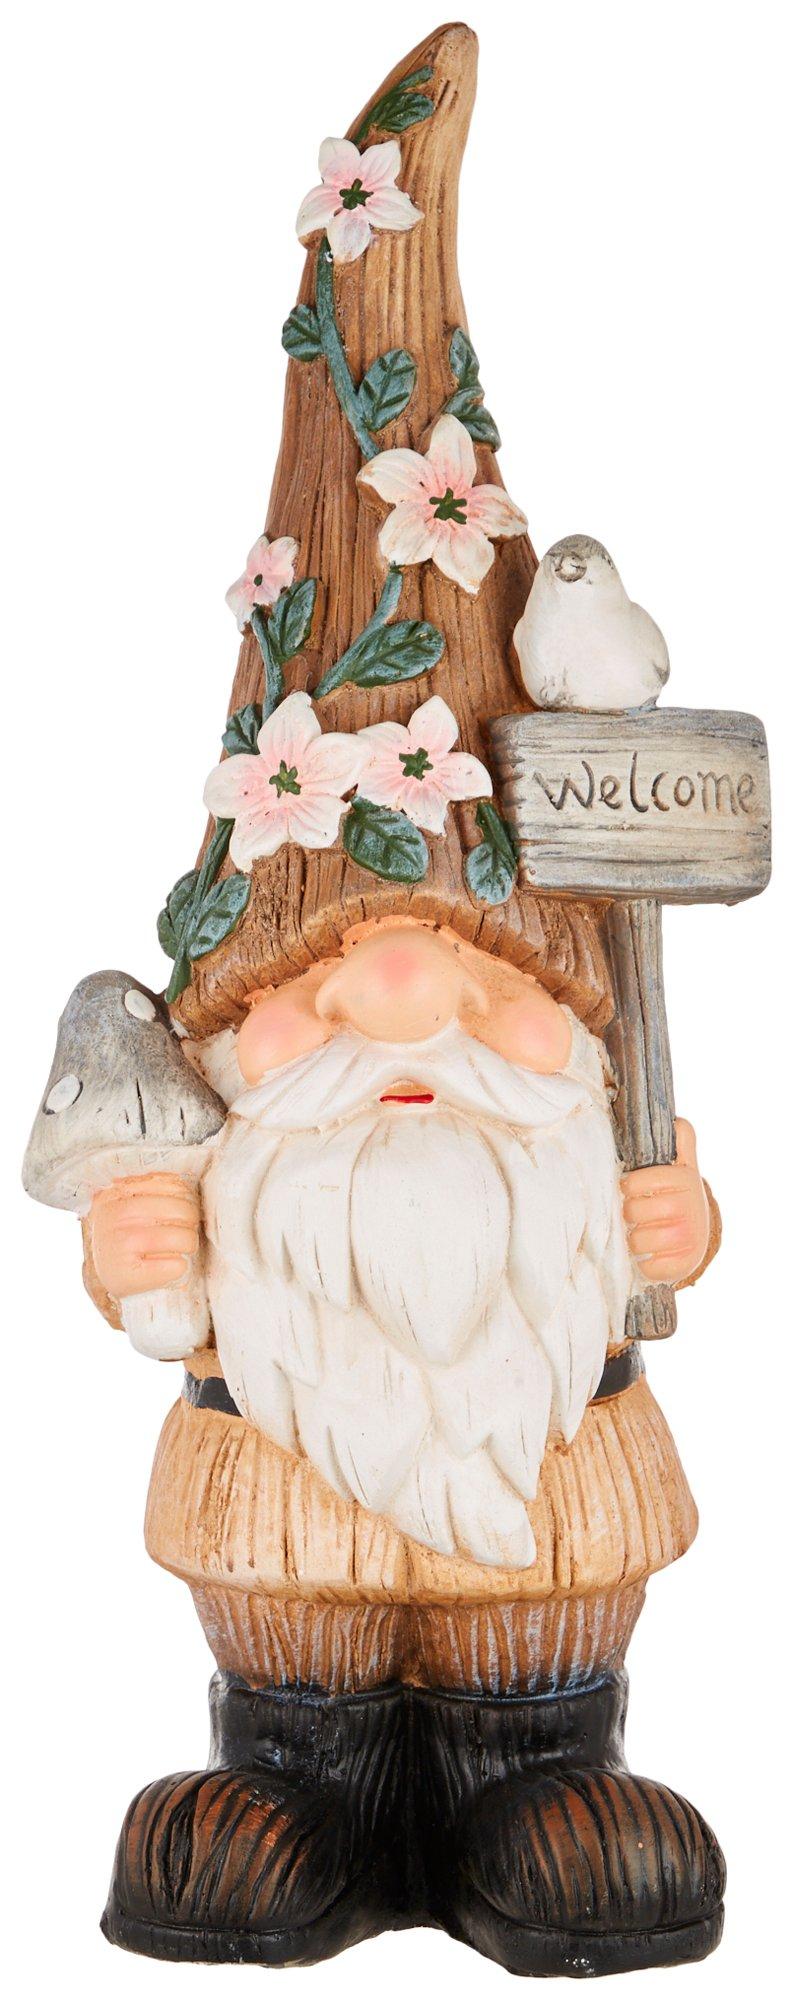 Coastal Home Ceramic Welcome Garden Gnome